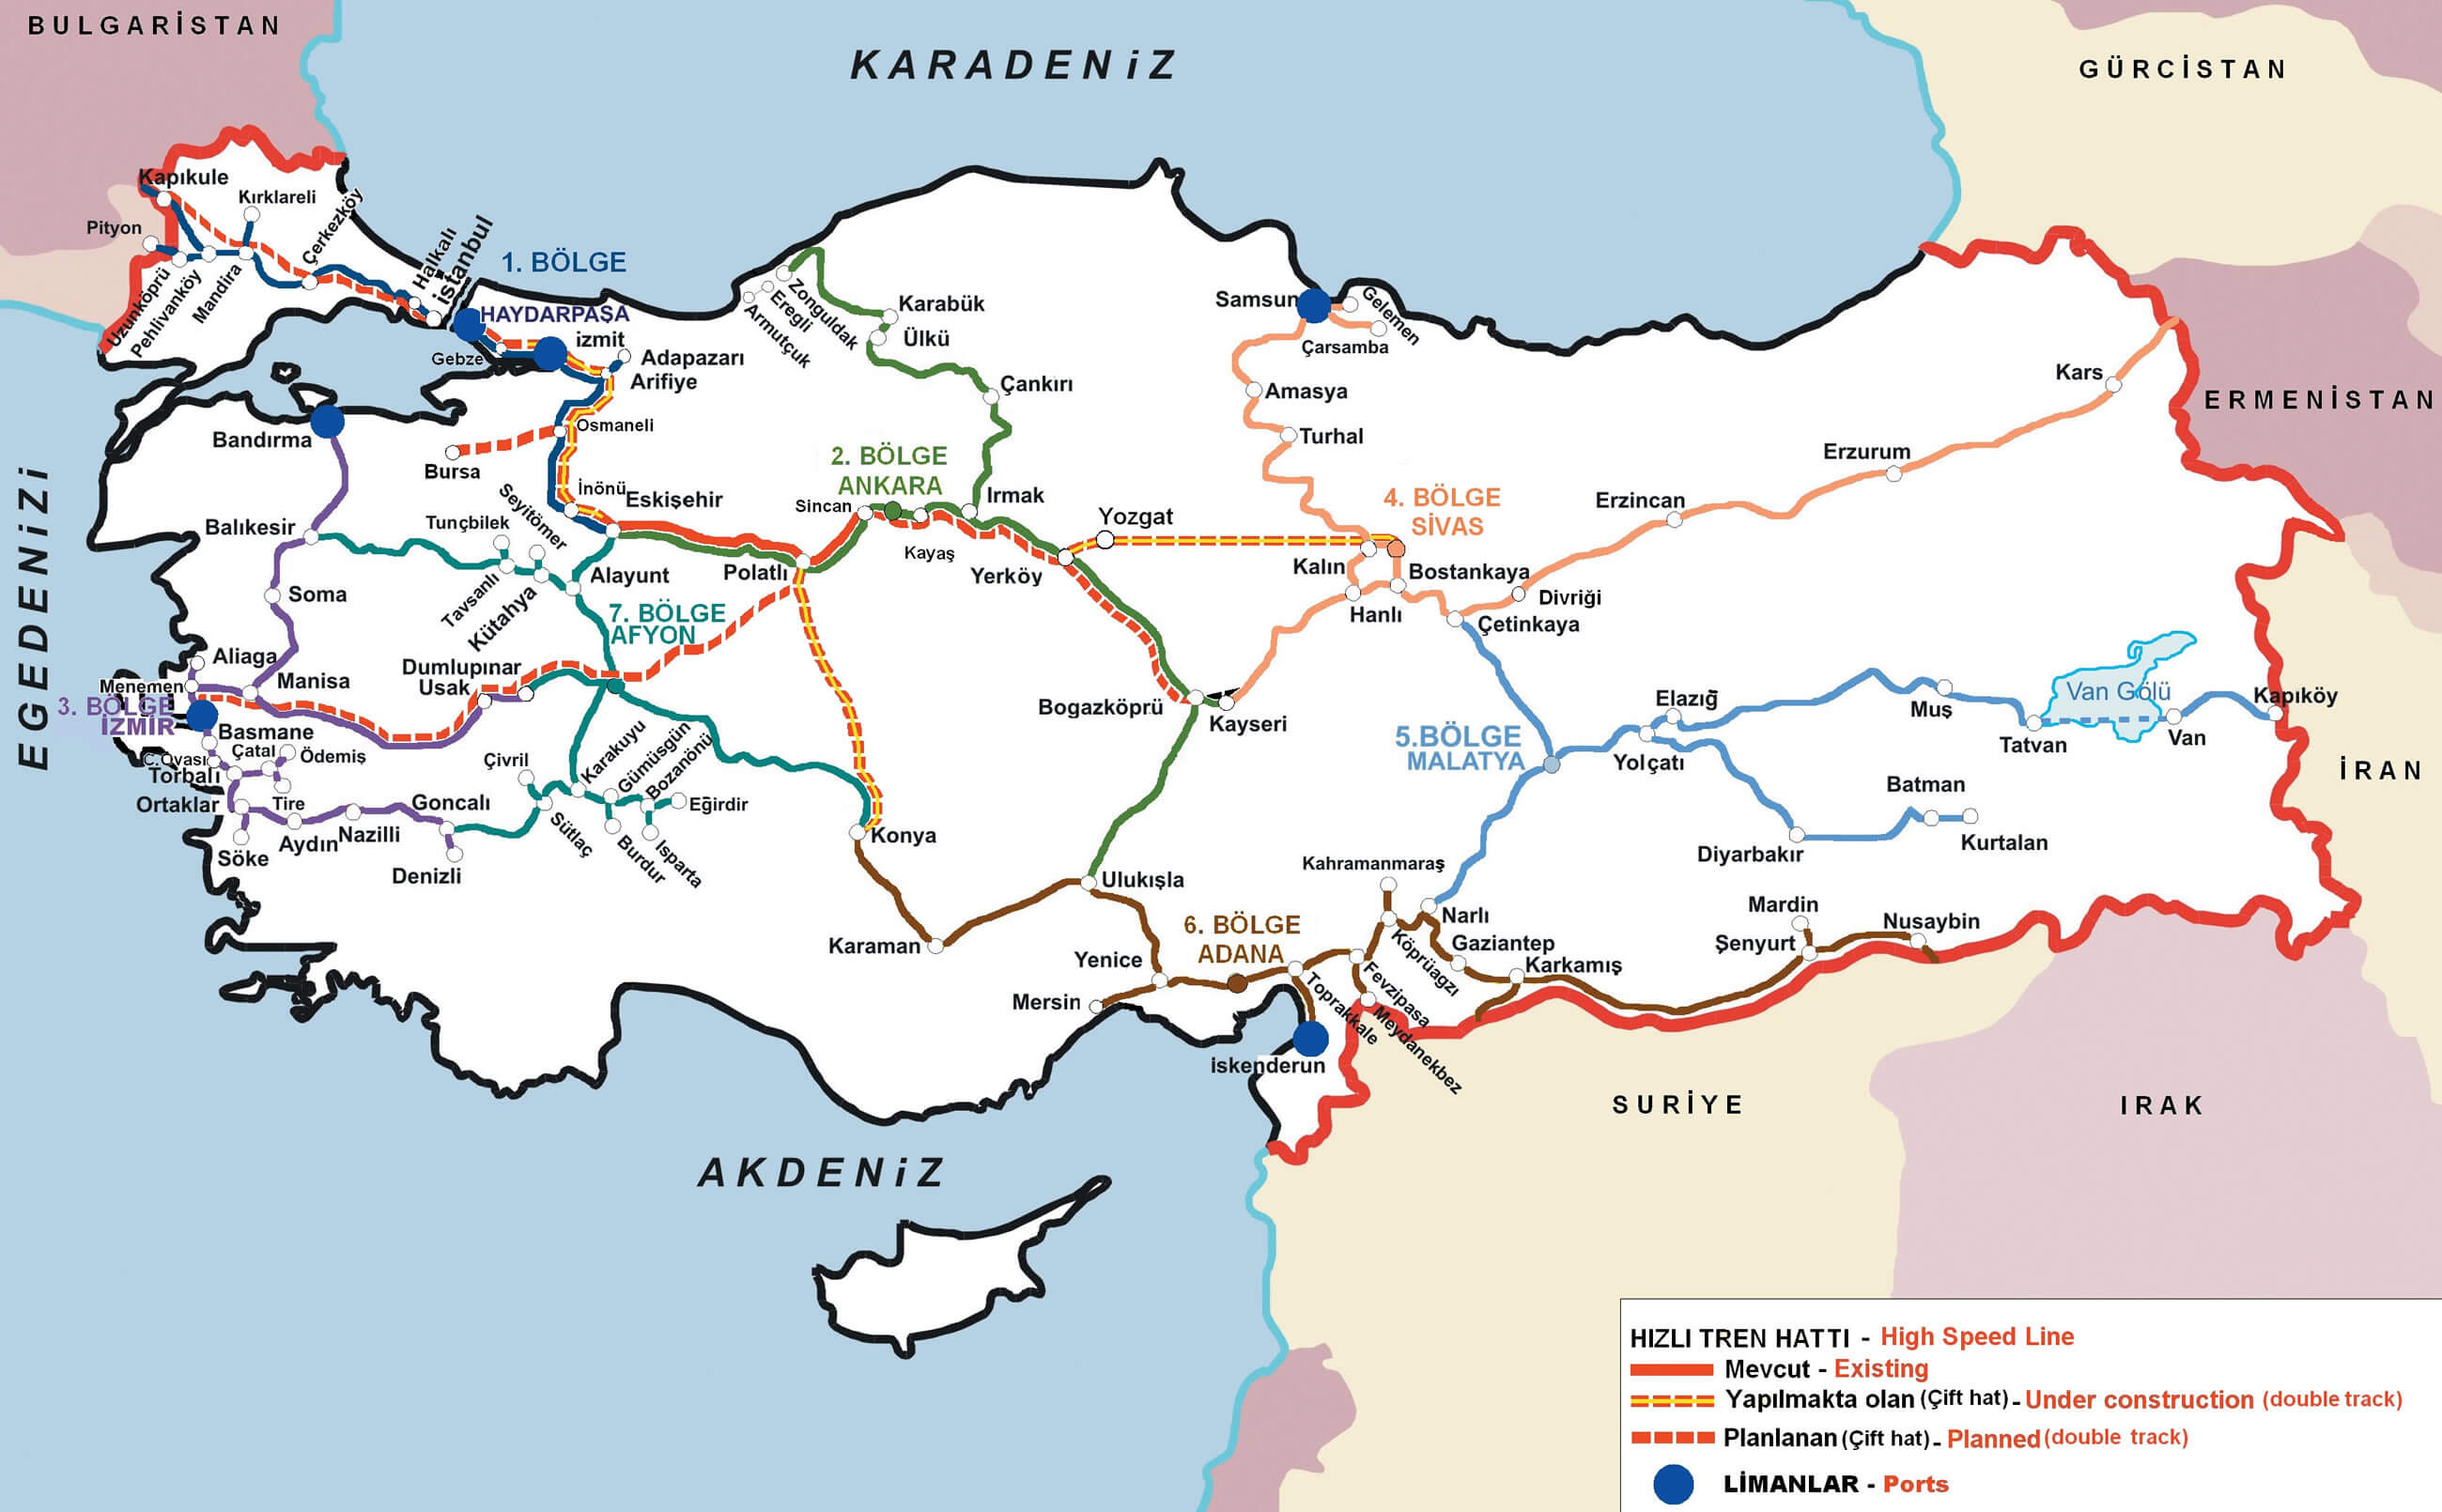 turkiye demiryollari hizli tren haritasi